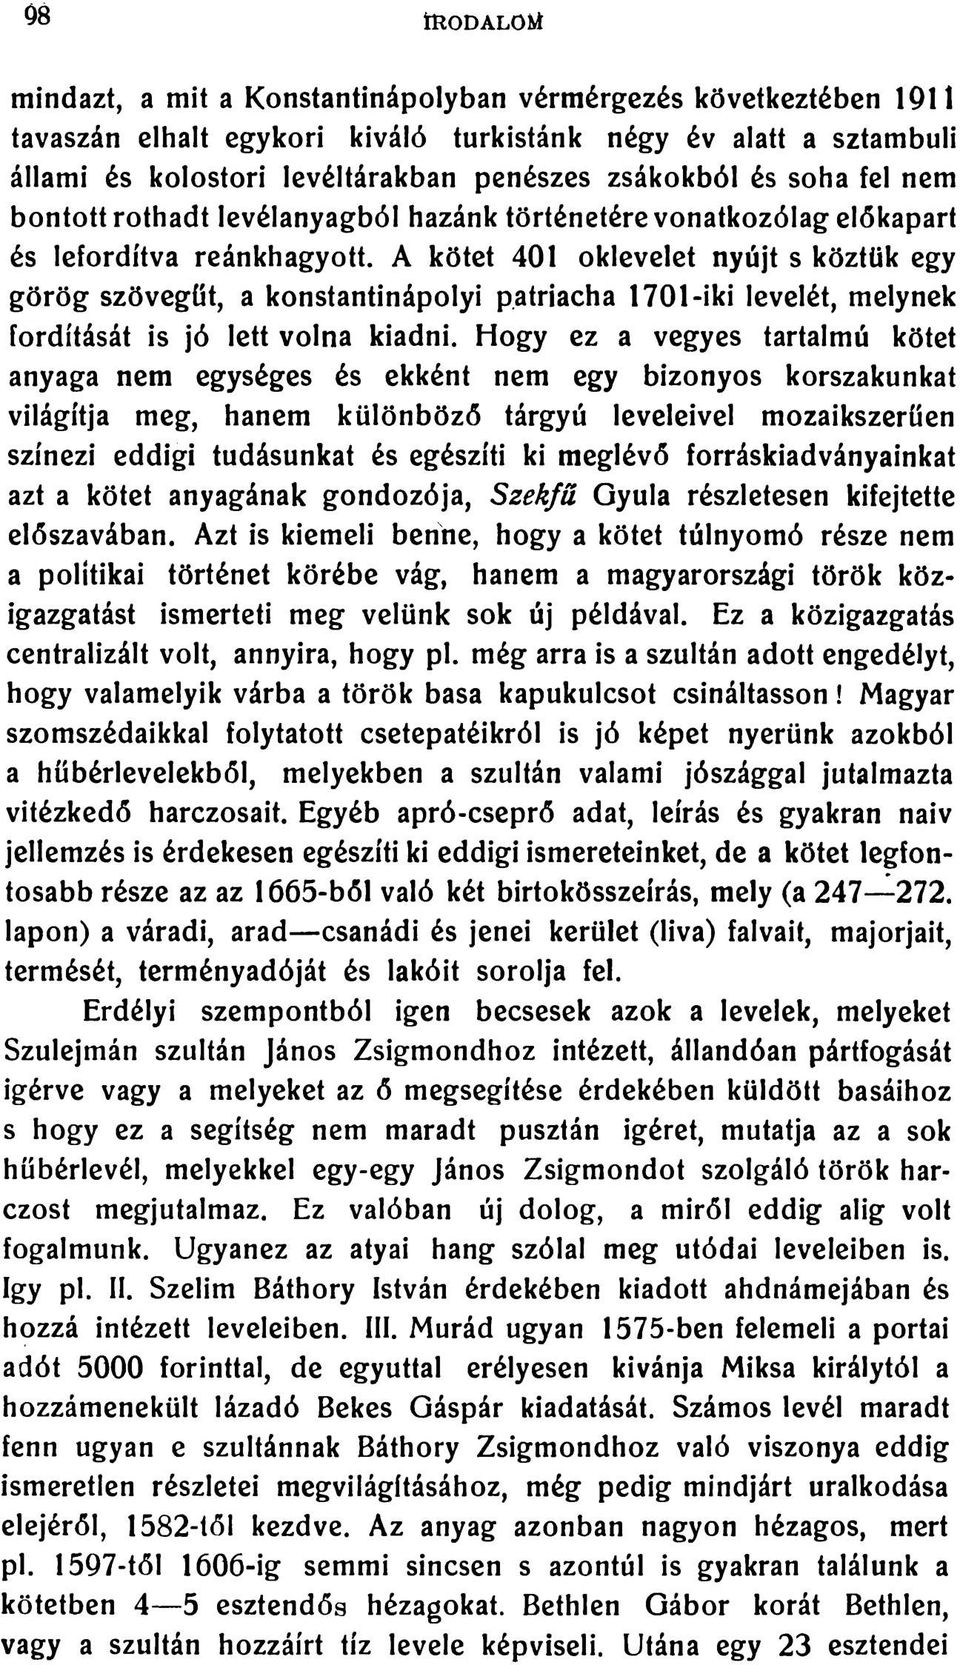 A kötet 401 oklevelet nyújt s köztük egy görög szövegűt, a konstantinápolyi patriacha 1701-iki levelét, melynek fordítását is jó lett volna kiadni.